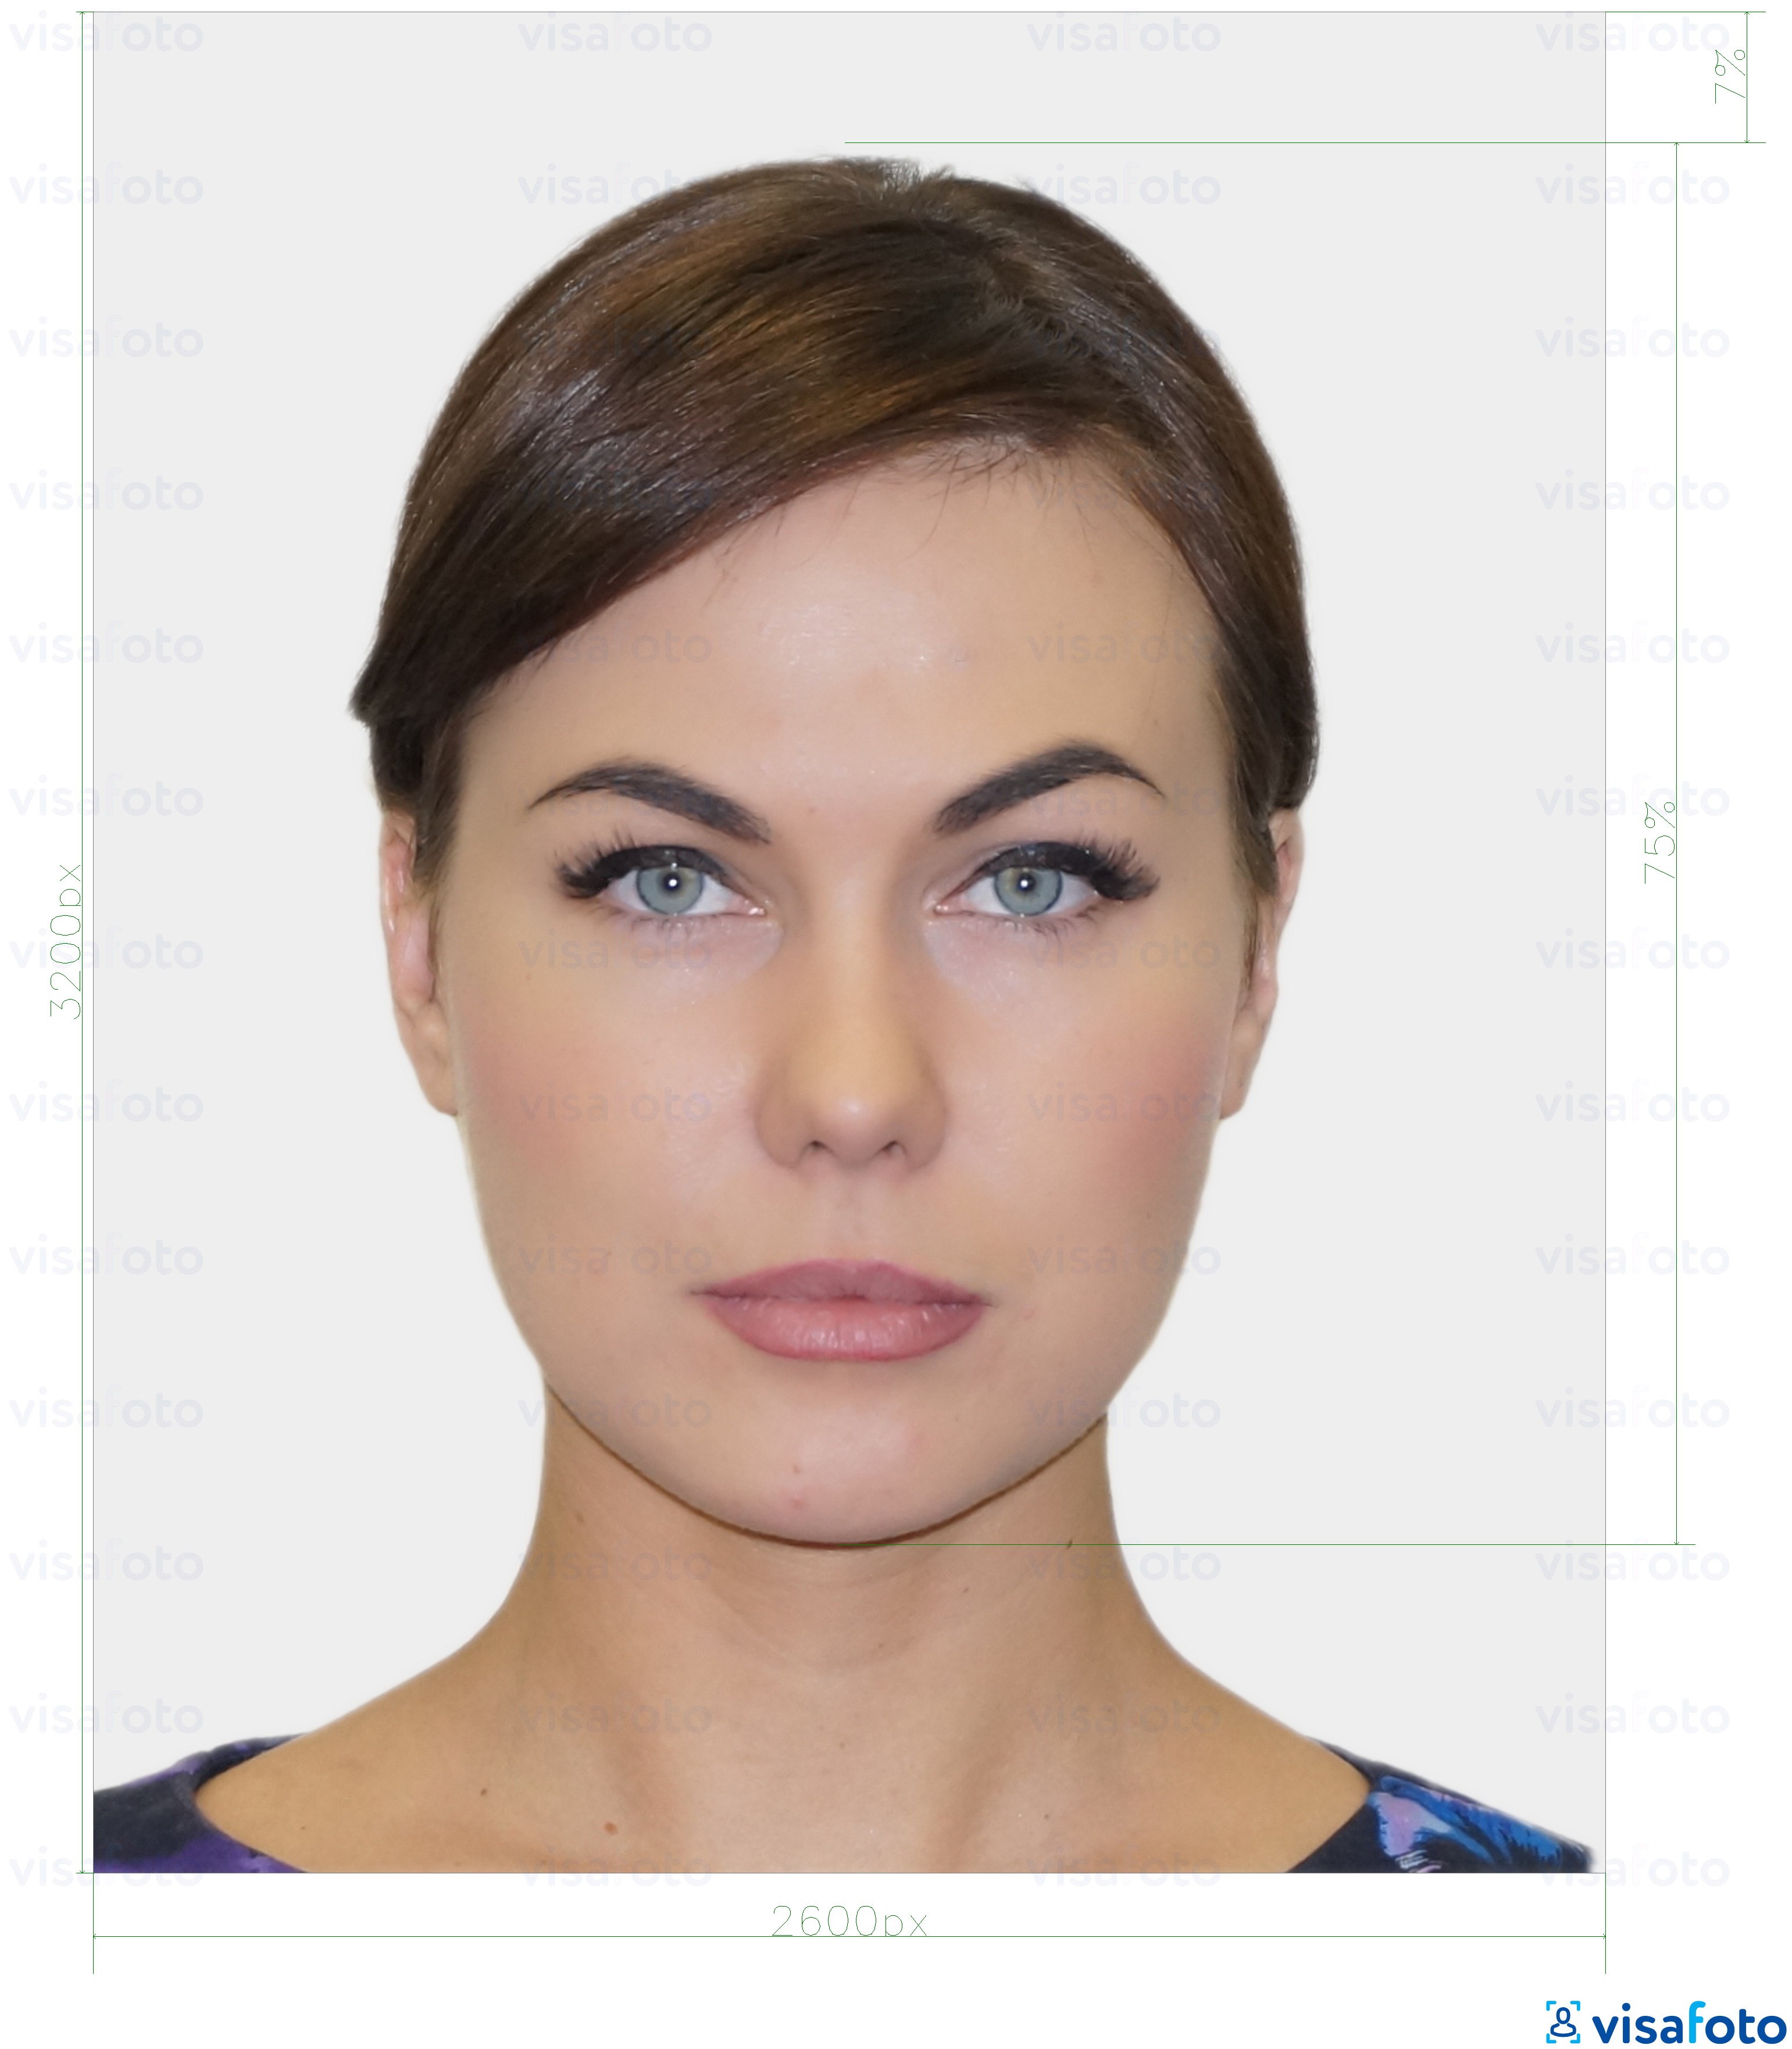 Фото на паспорт новокузнецкая